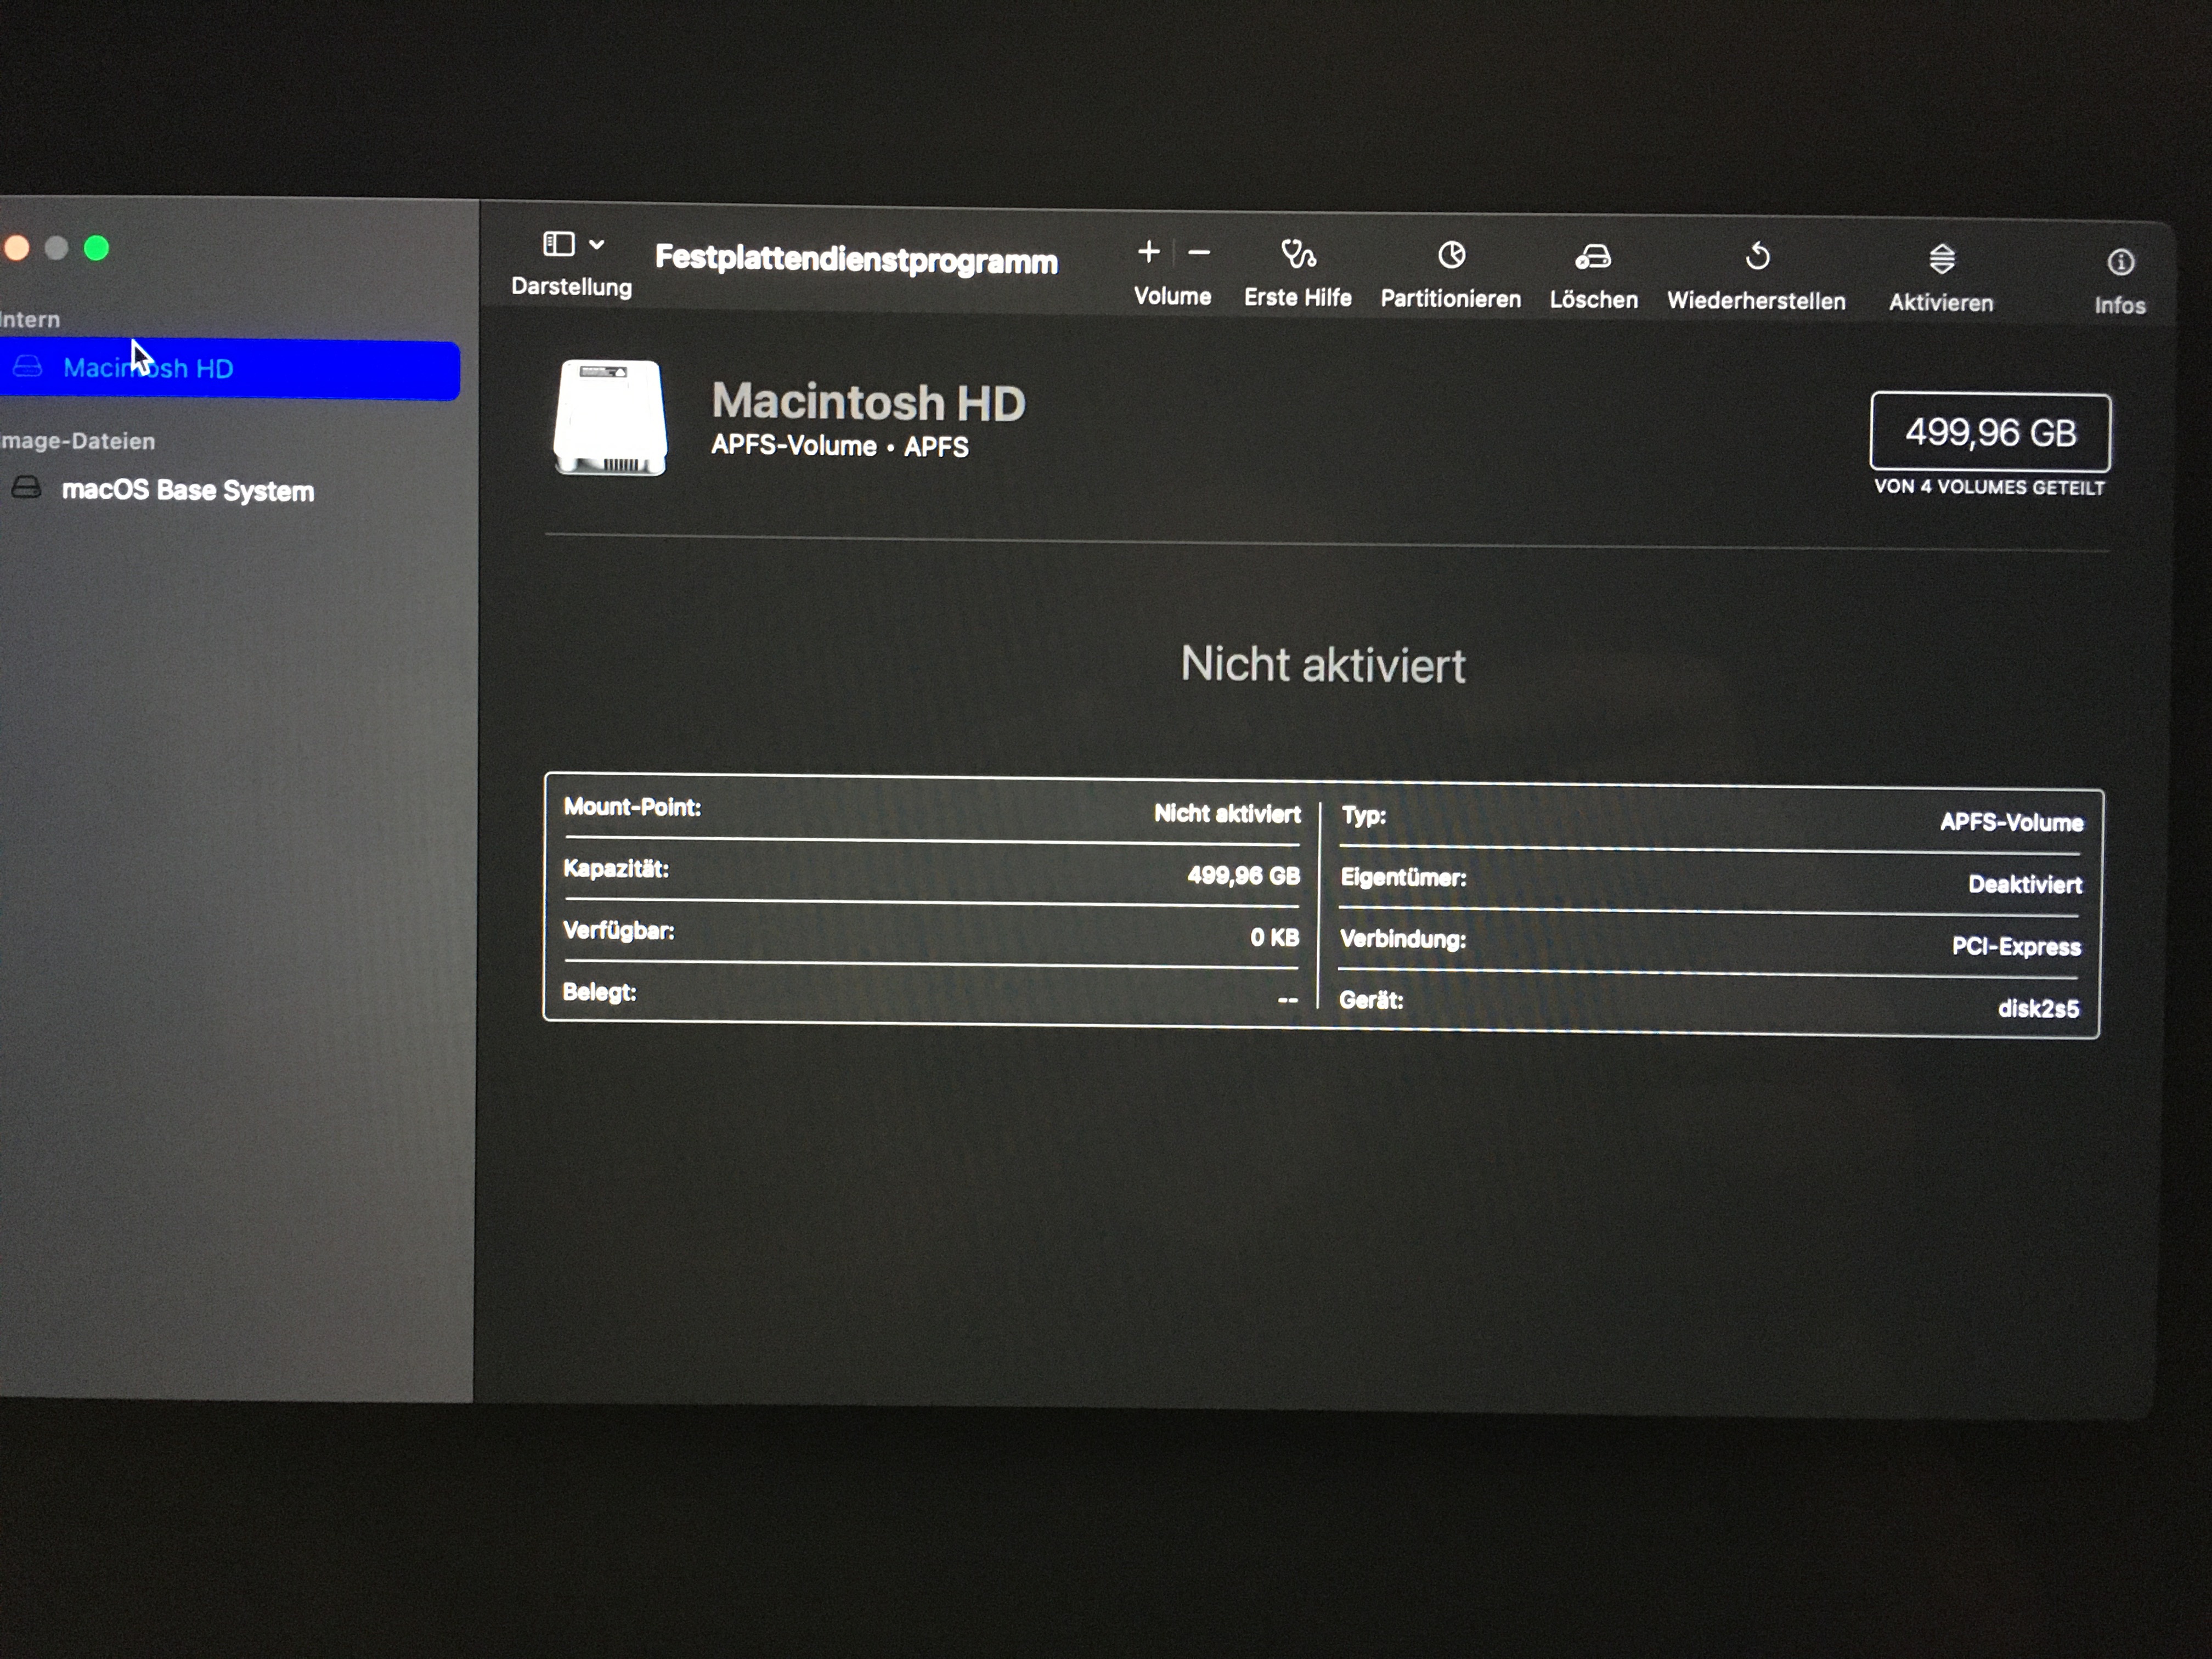 Warum & Wie kann macOS Monterey nicht auf dem Macintosh HD installiert  werden